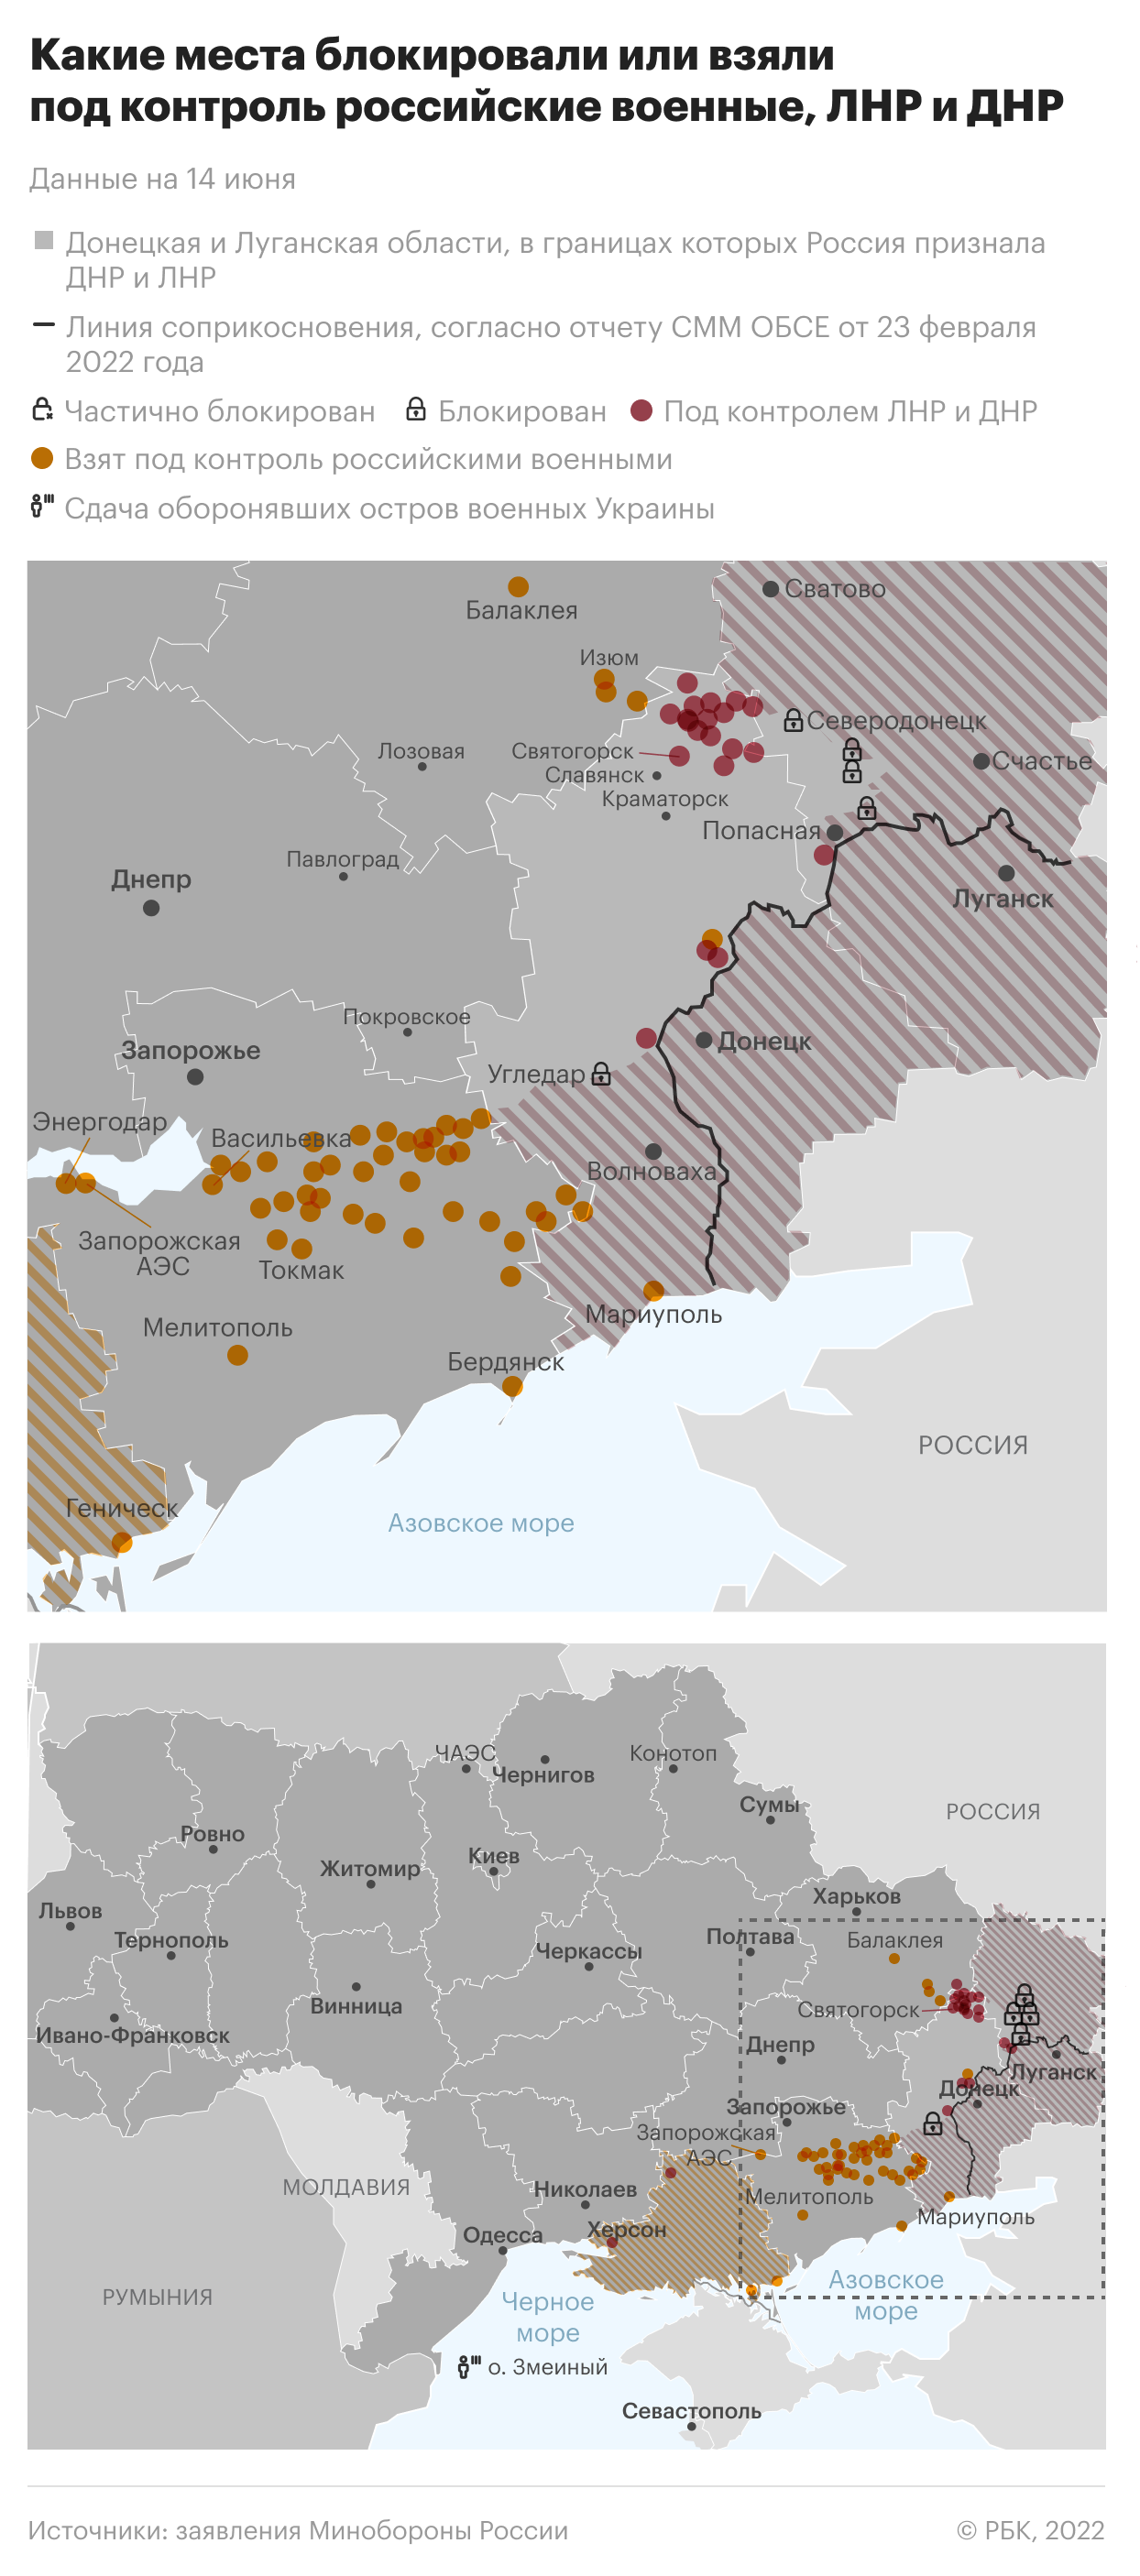 Пророссийские власти Запорожья обвинили ВСУ в повреждении трассы в Крым"/>













